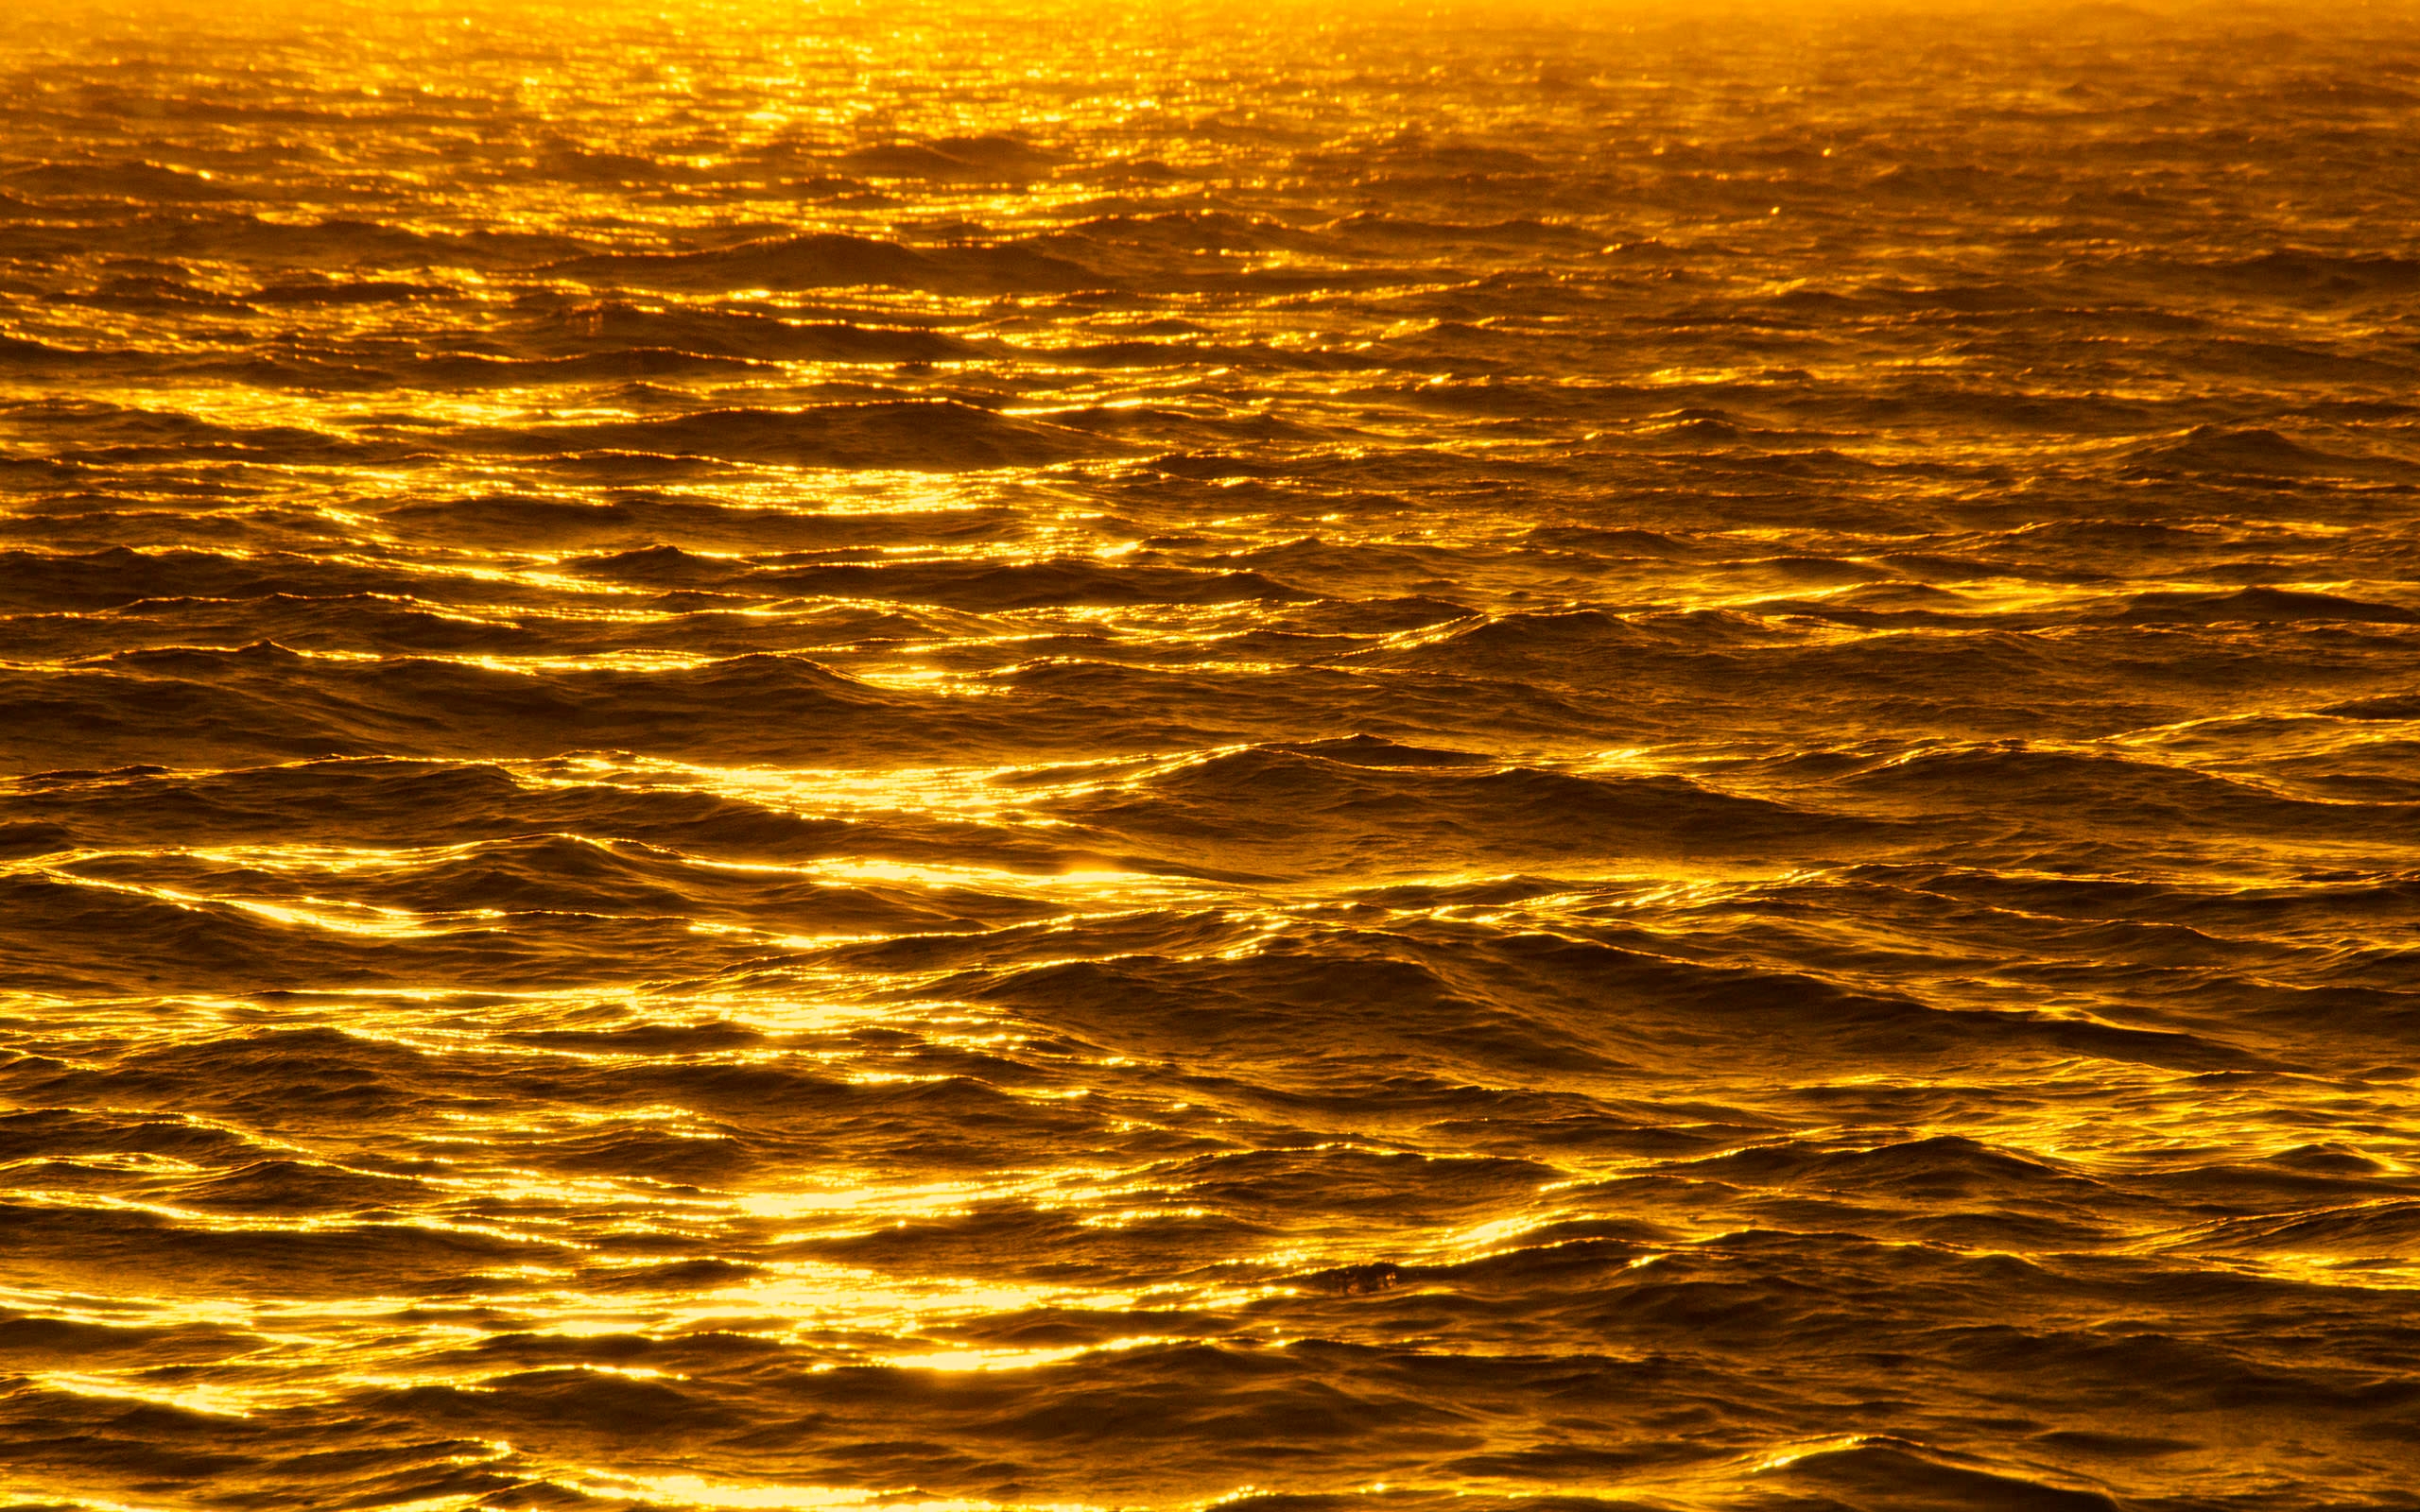 hd wallpaper golden,himmel,horizont,wasser,gelb,meer